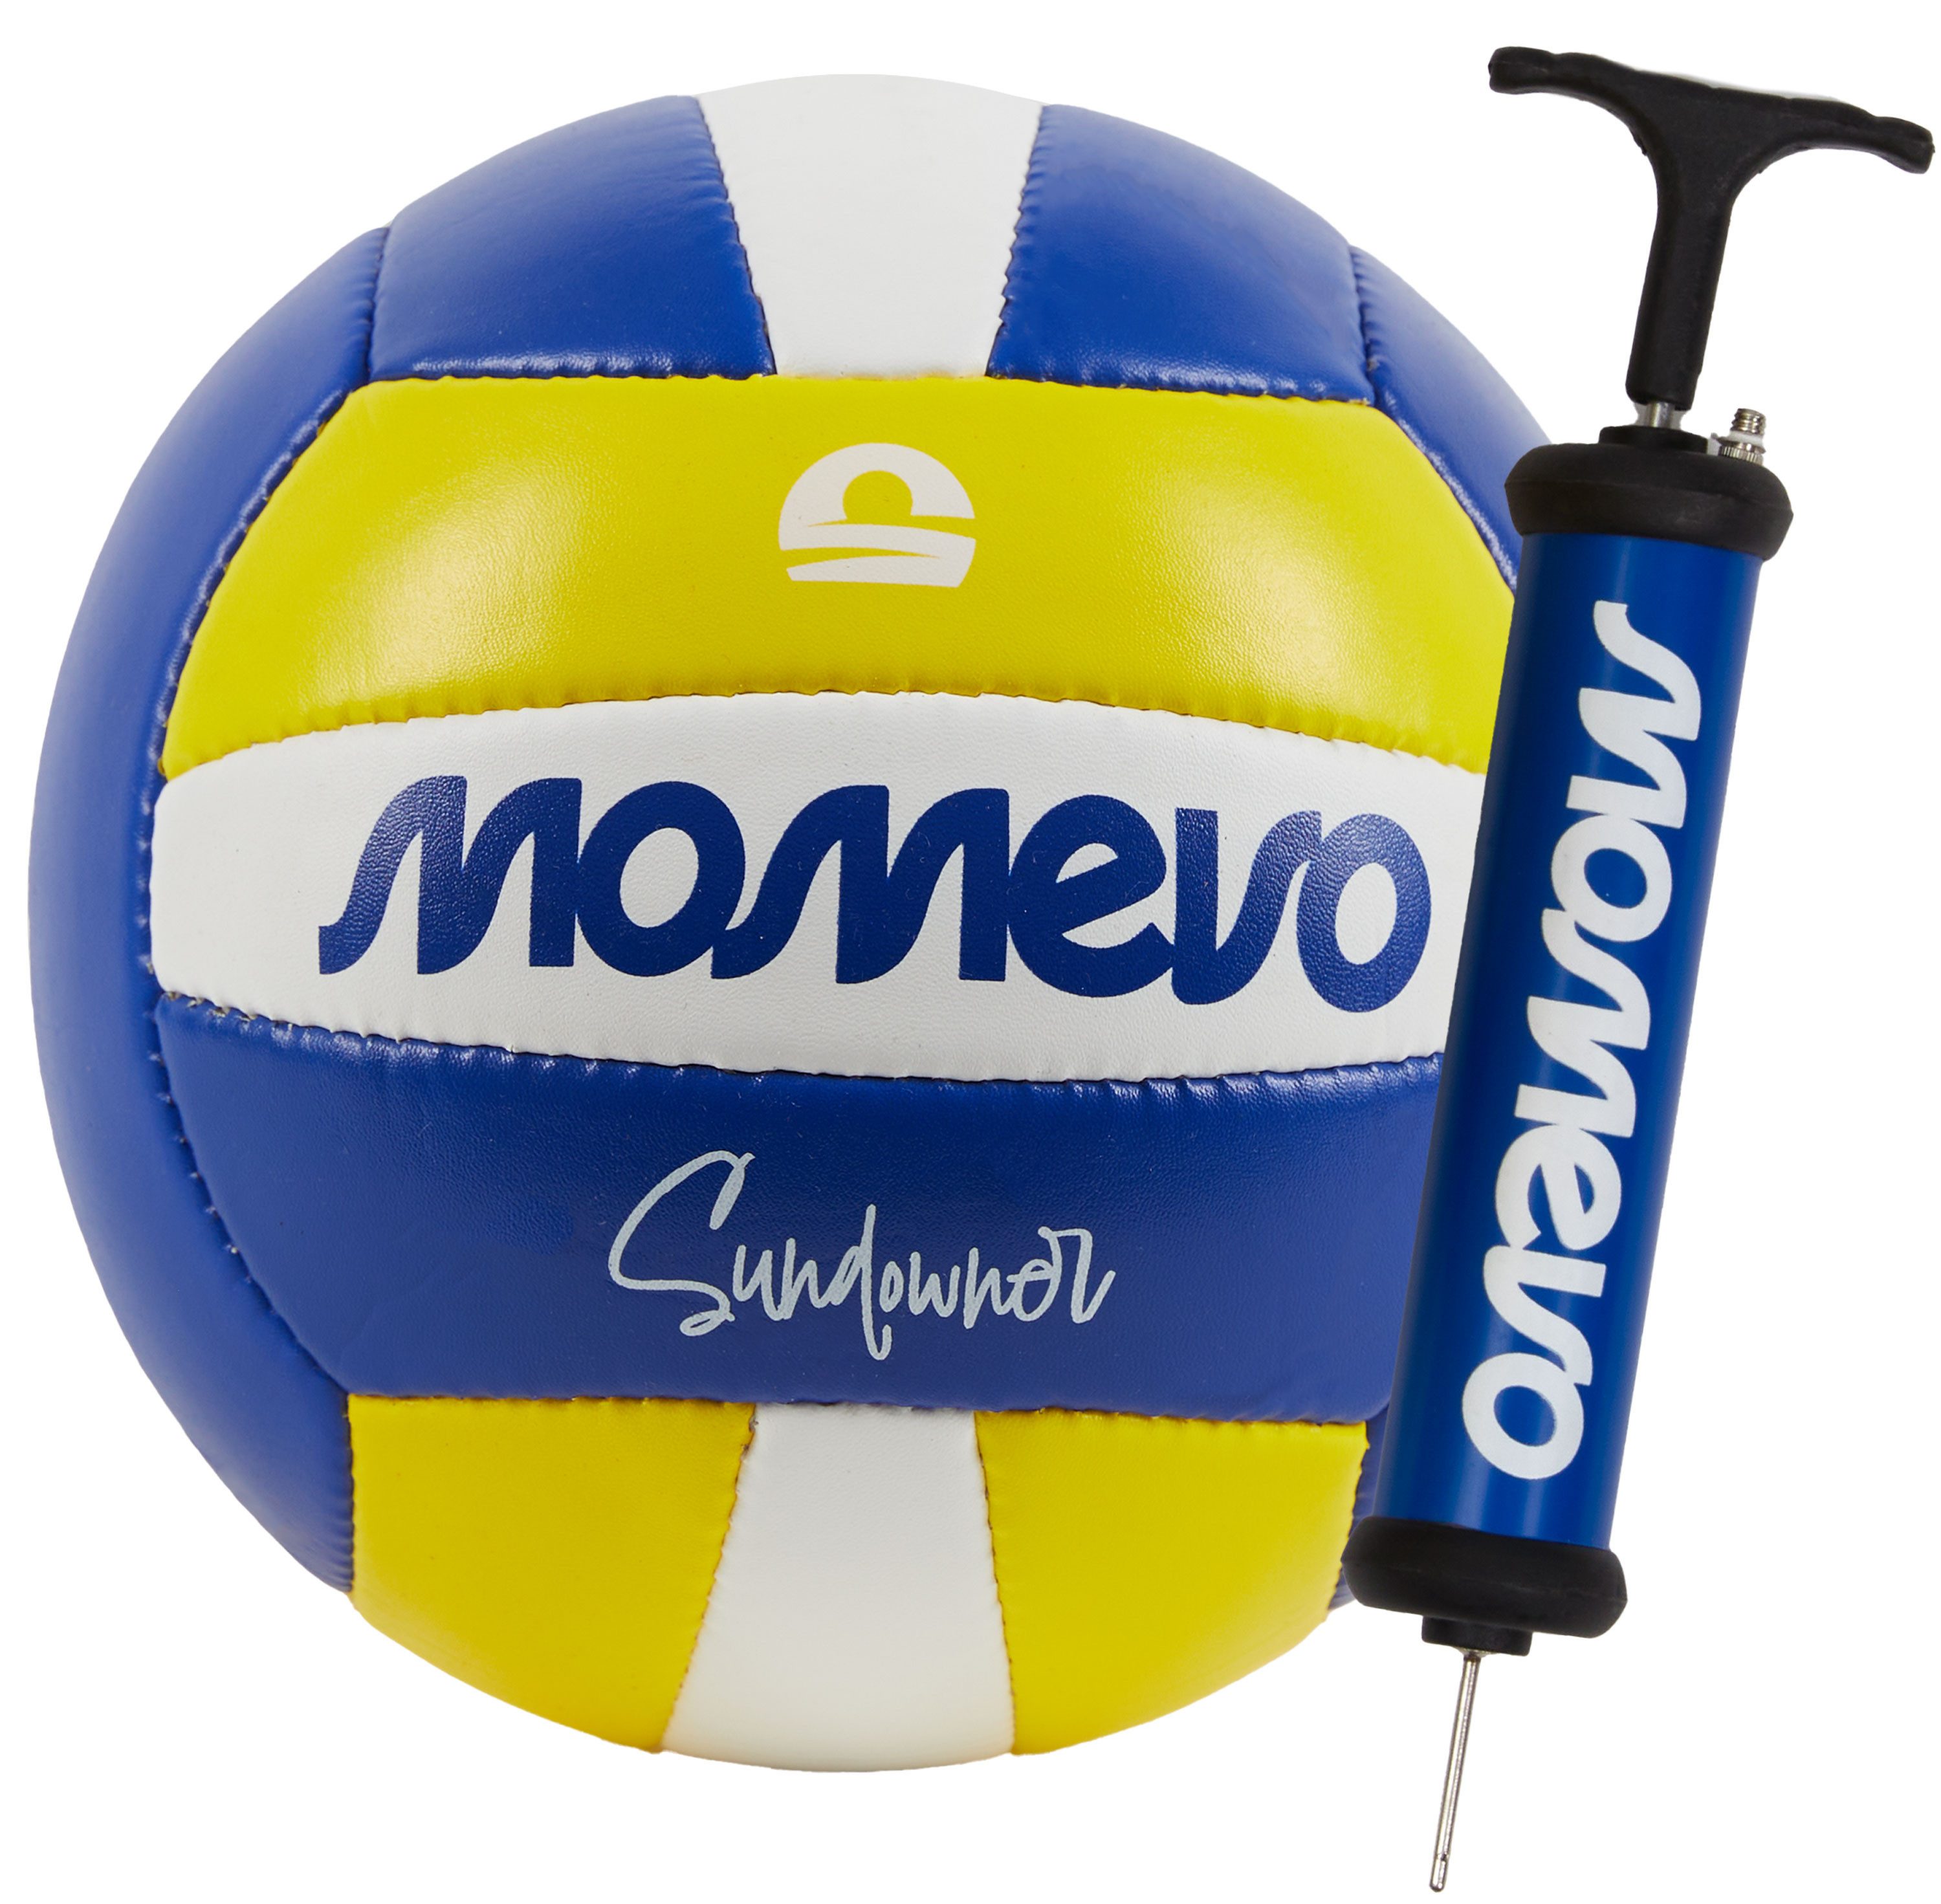 Momevo Beachvolleyball mit Pumpe, Größe 5, wasserdicht, weiche Oberfläche ideal für Anfänger